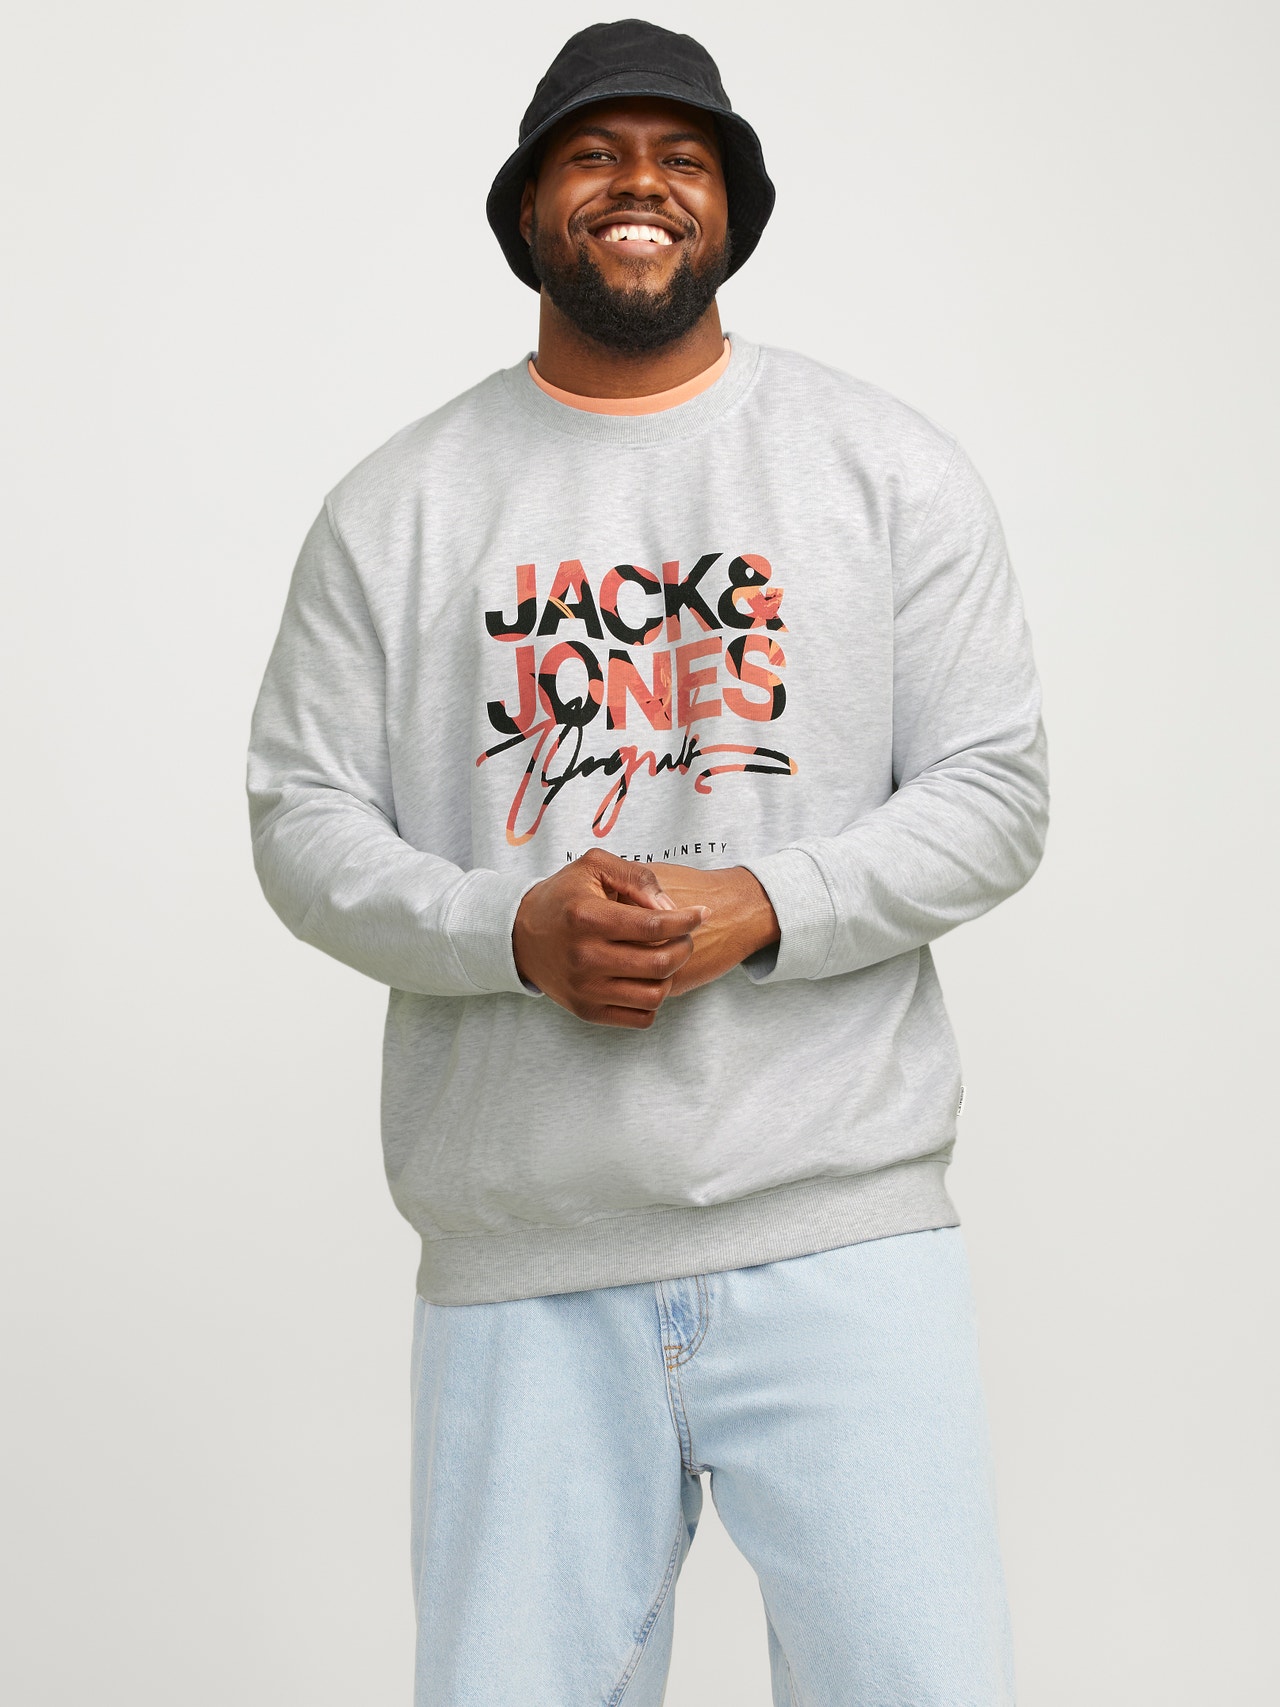 Jack & Jones Plus Size Tryck Crewneck tröja -Bright White - 12261380